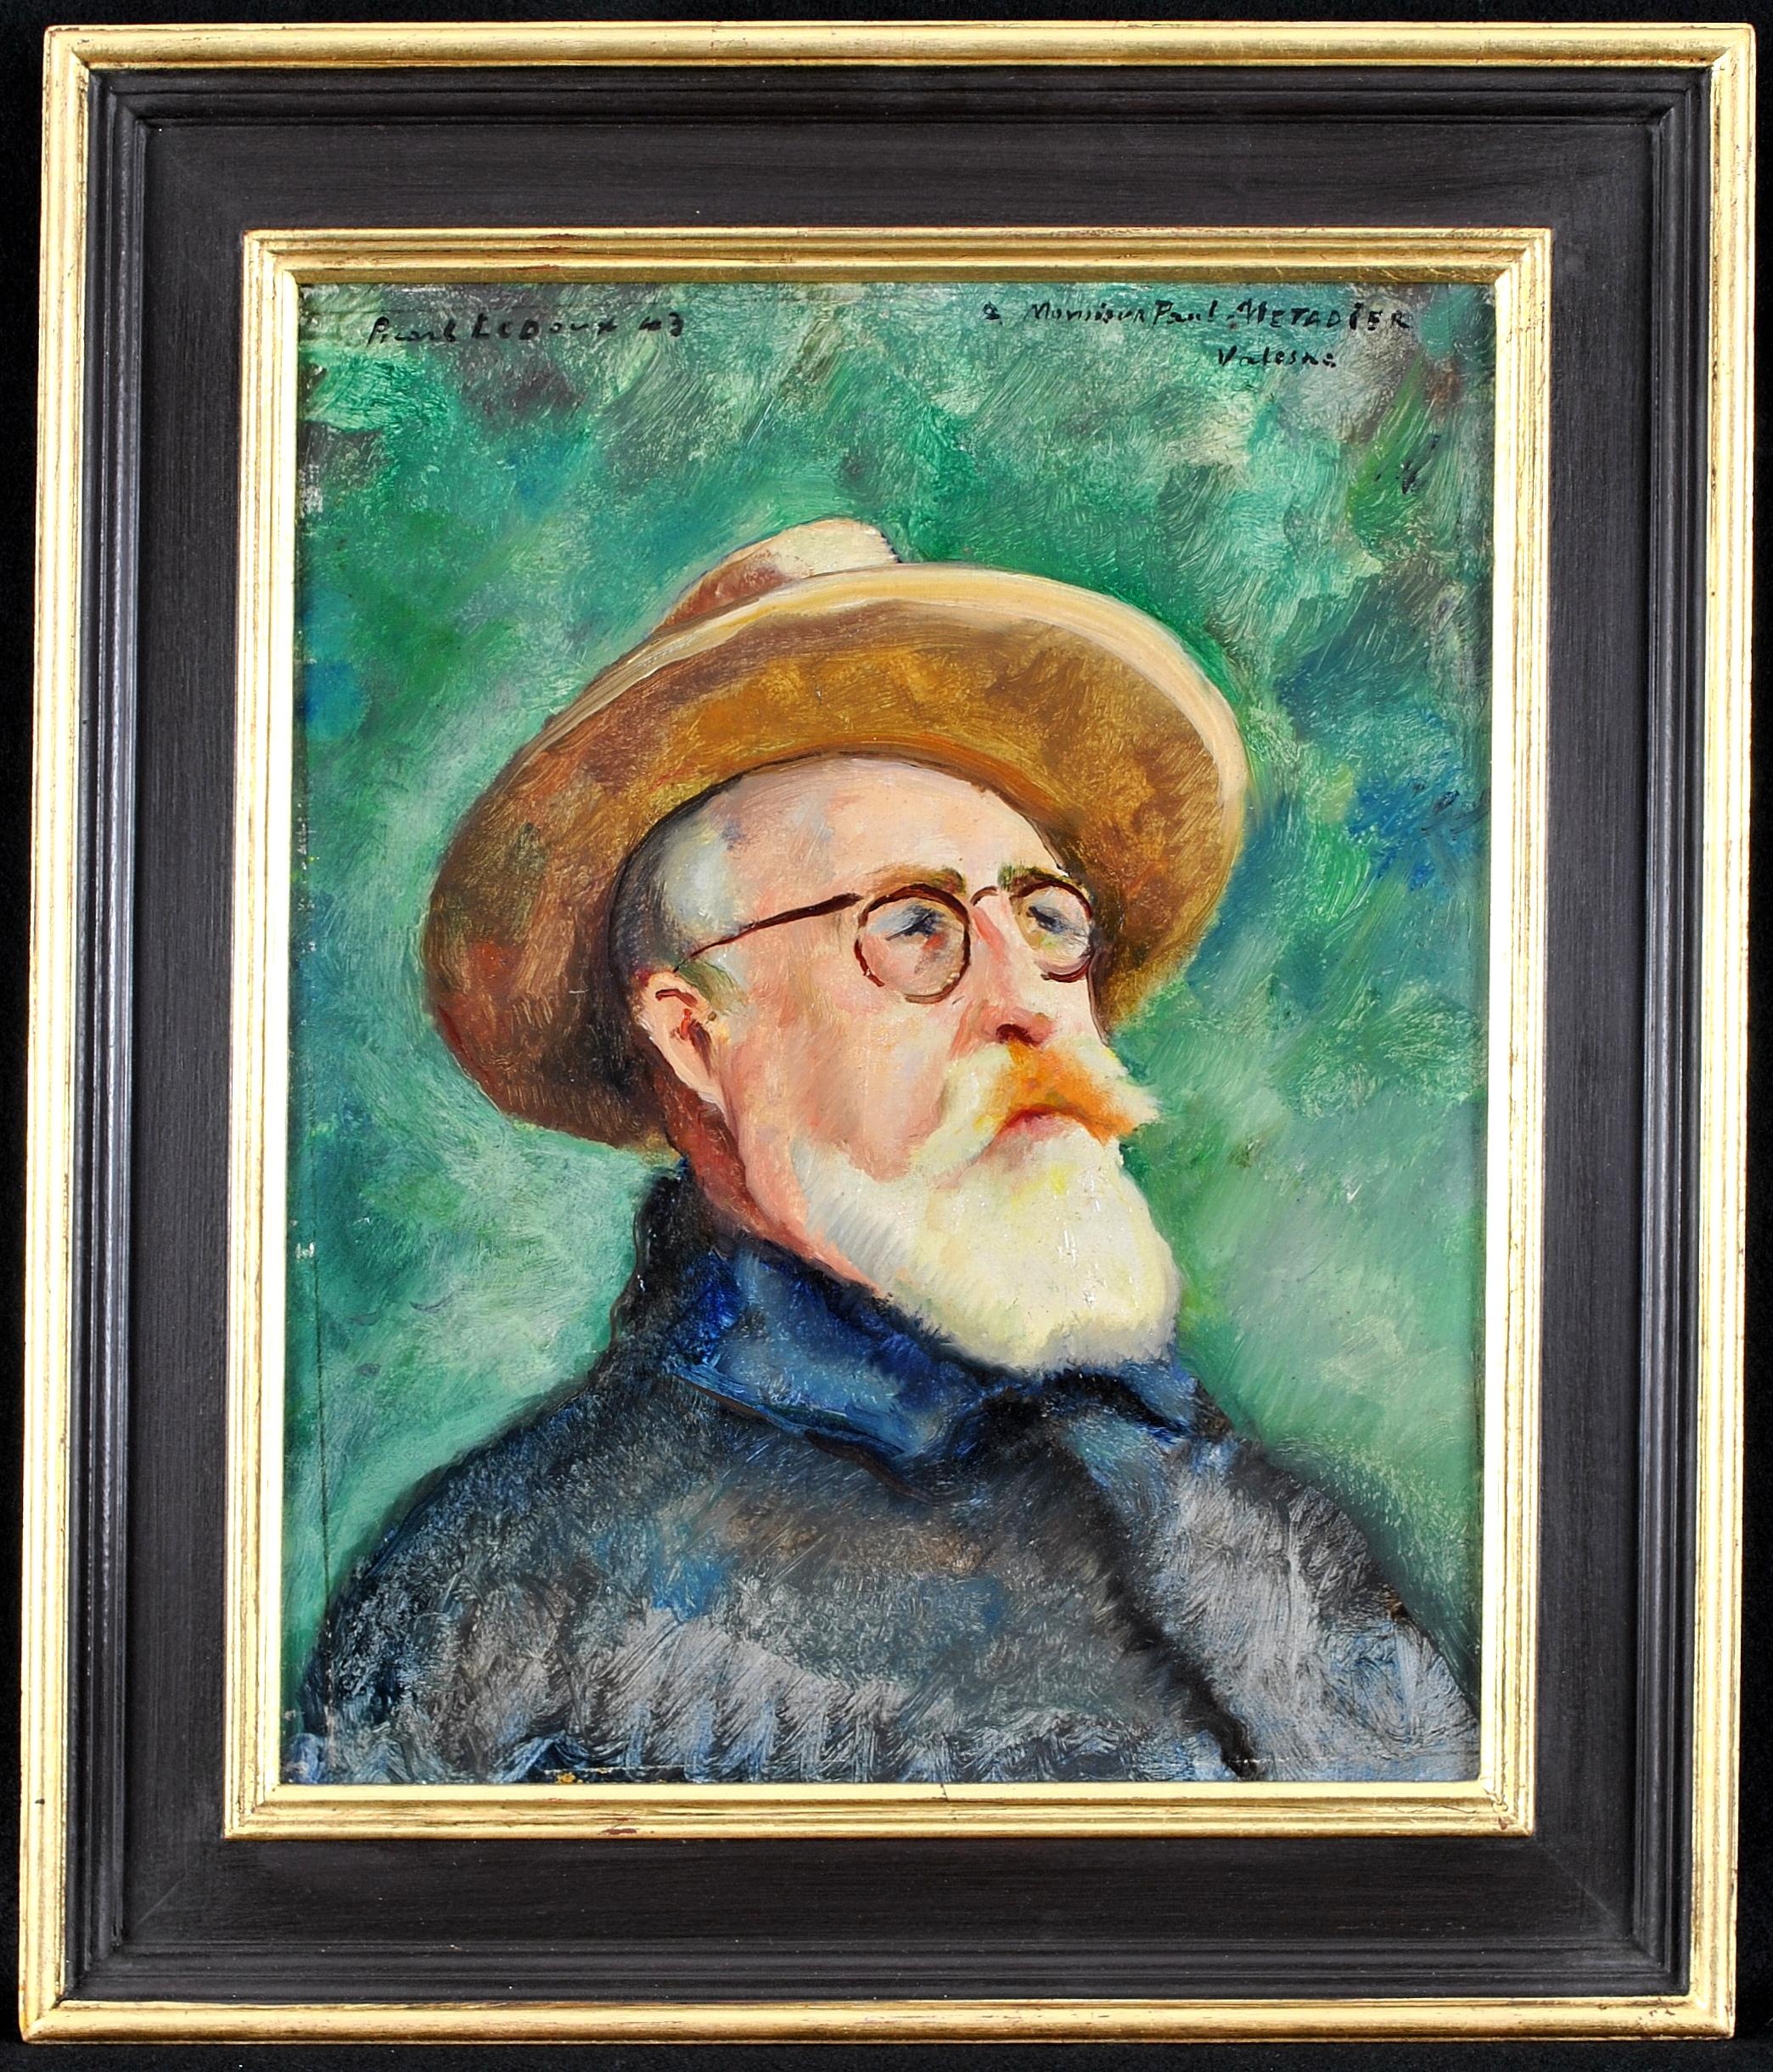 Portrait Painting Charles Picart le Doux - Self Portrait - Peinture impressionniste française du milieu du 20e siècle - Huile sur panneau